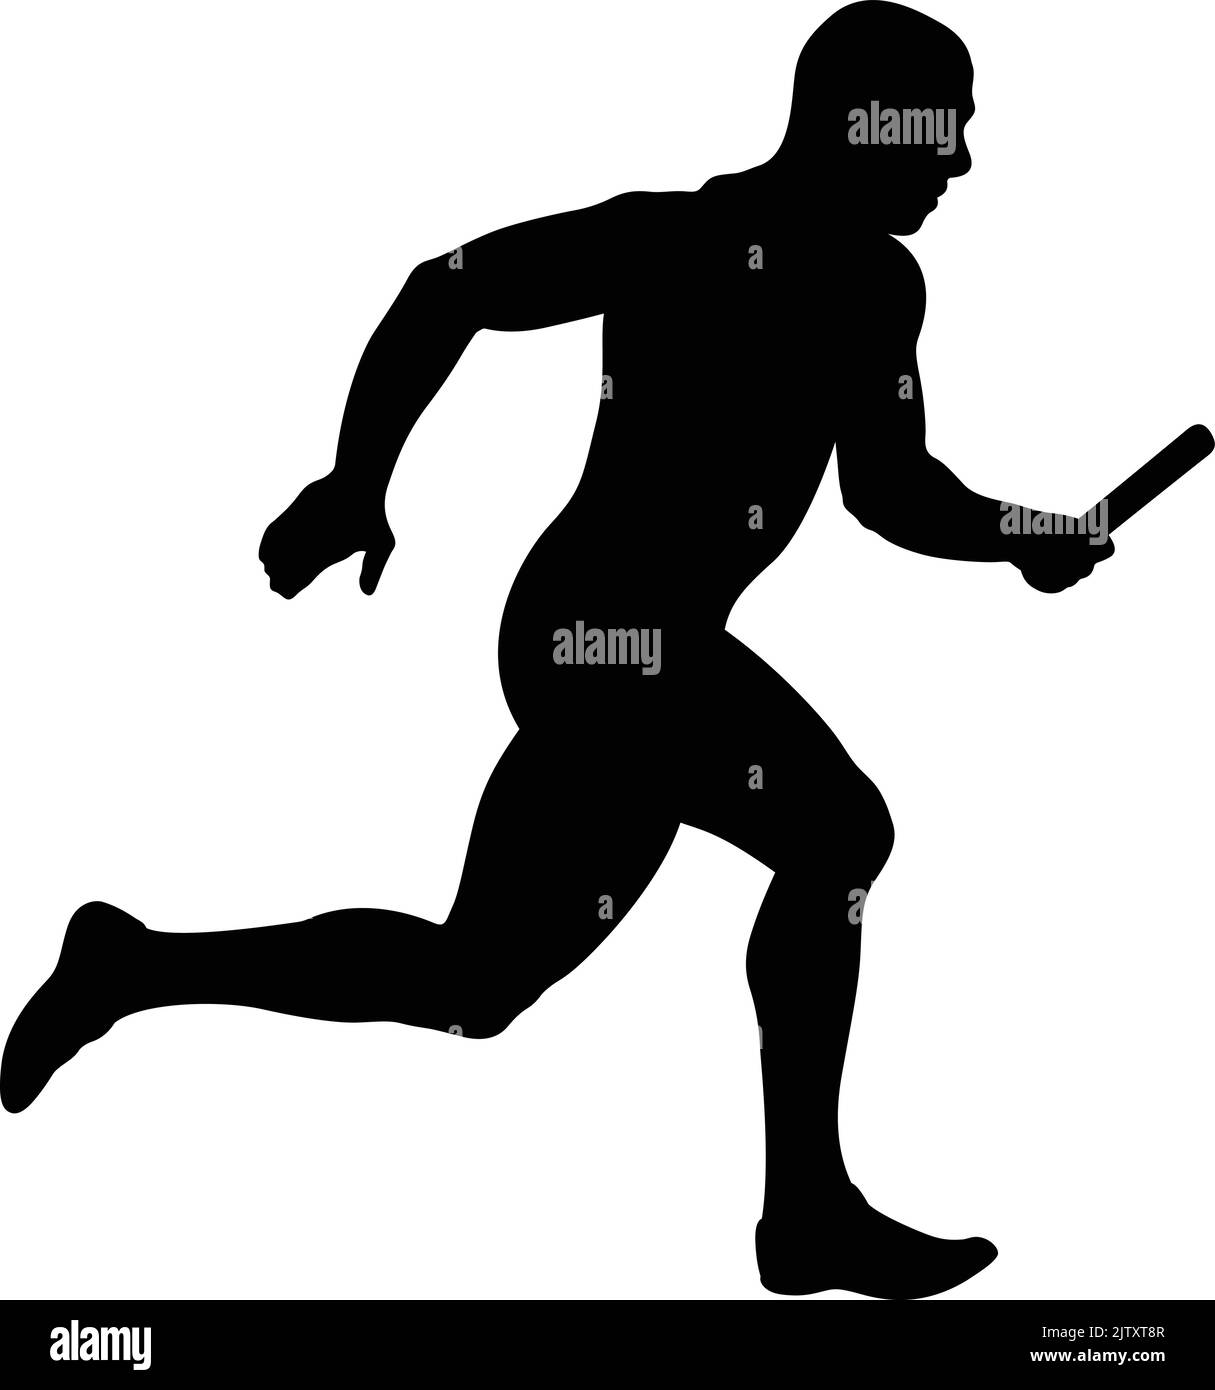 athlete runner running relay race black silhouette Stock Vector